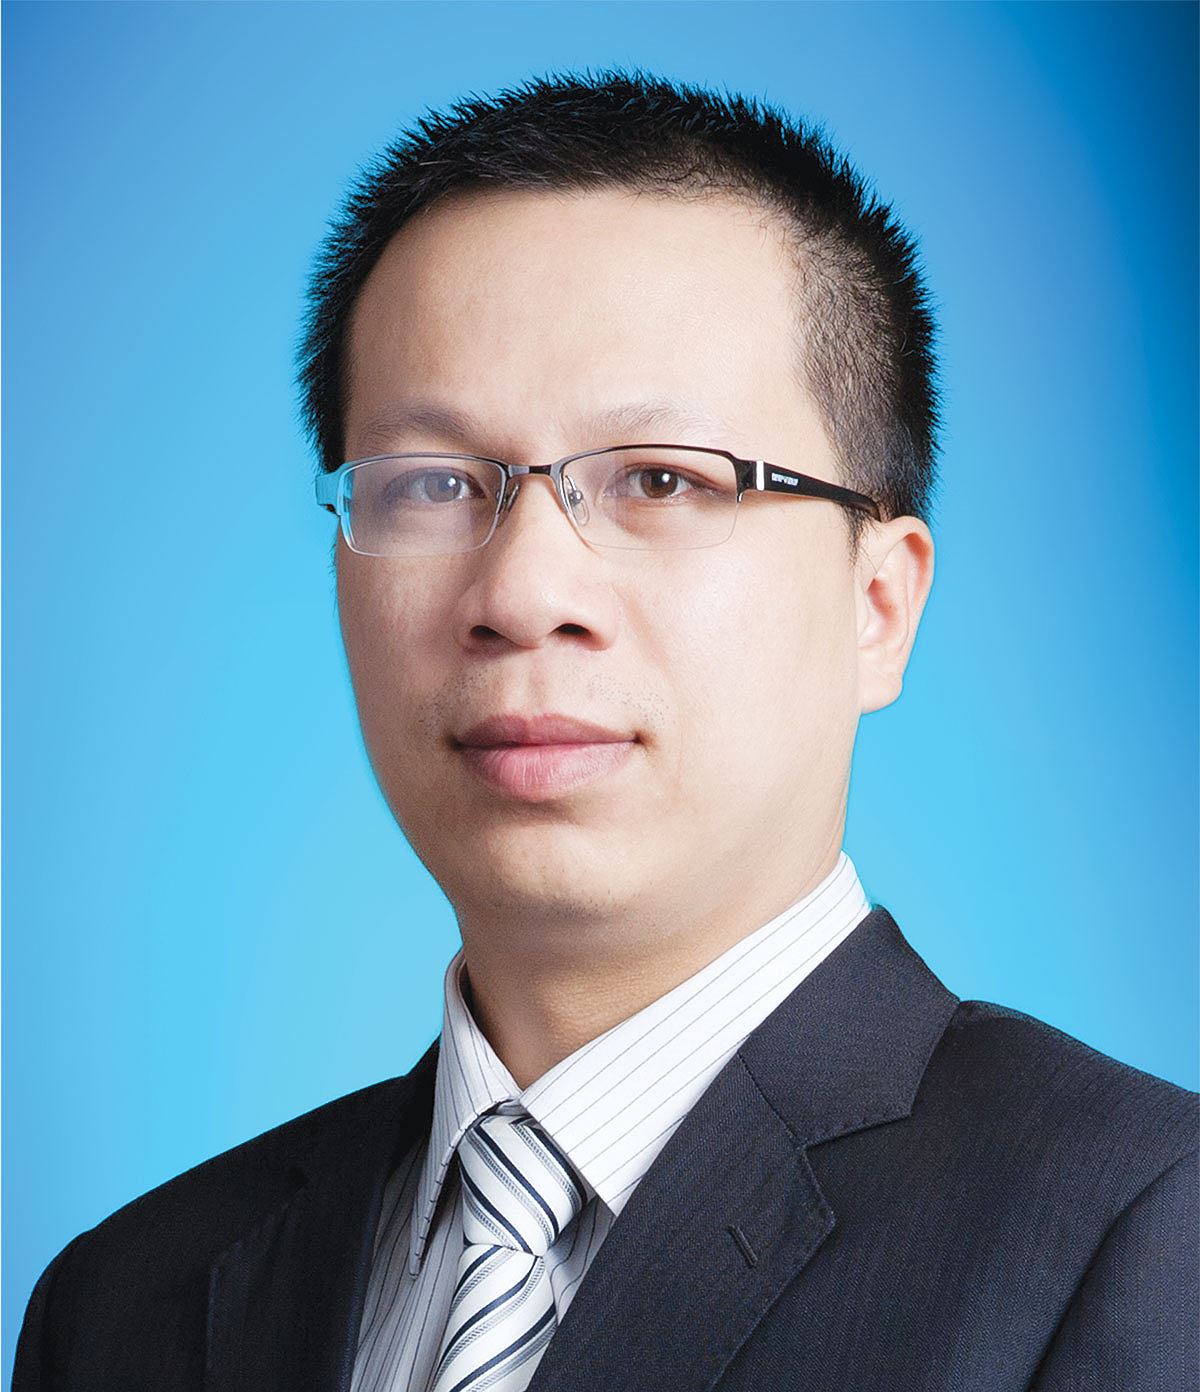  Ông Nguyễn Huy Cường, Giám đốc Công ty TNHH Raffles Việt Nam